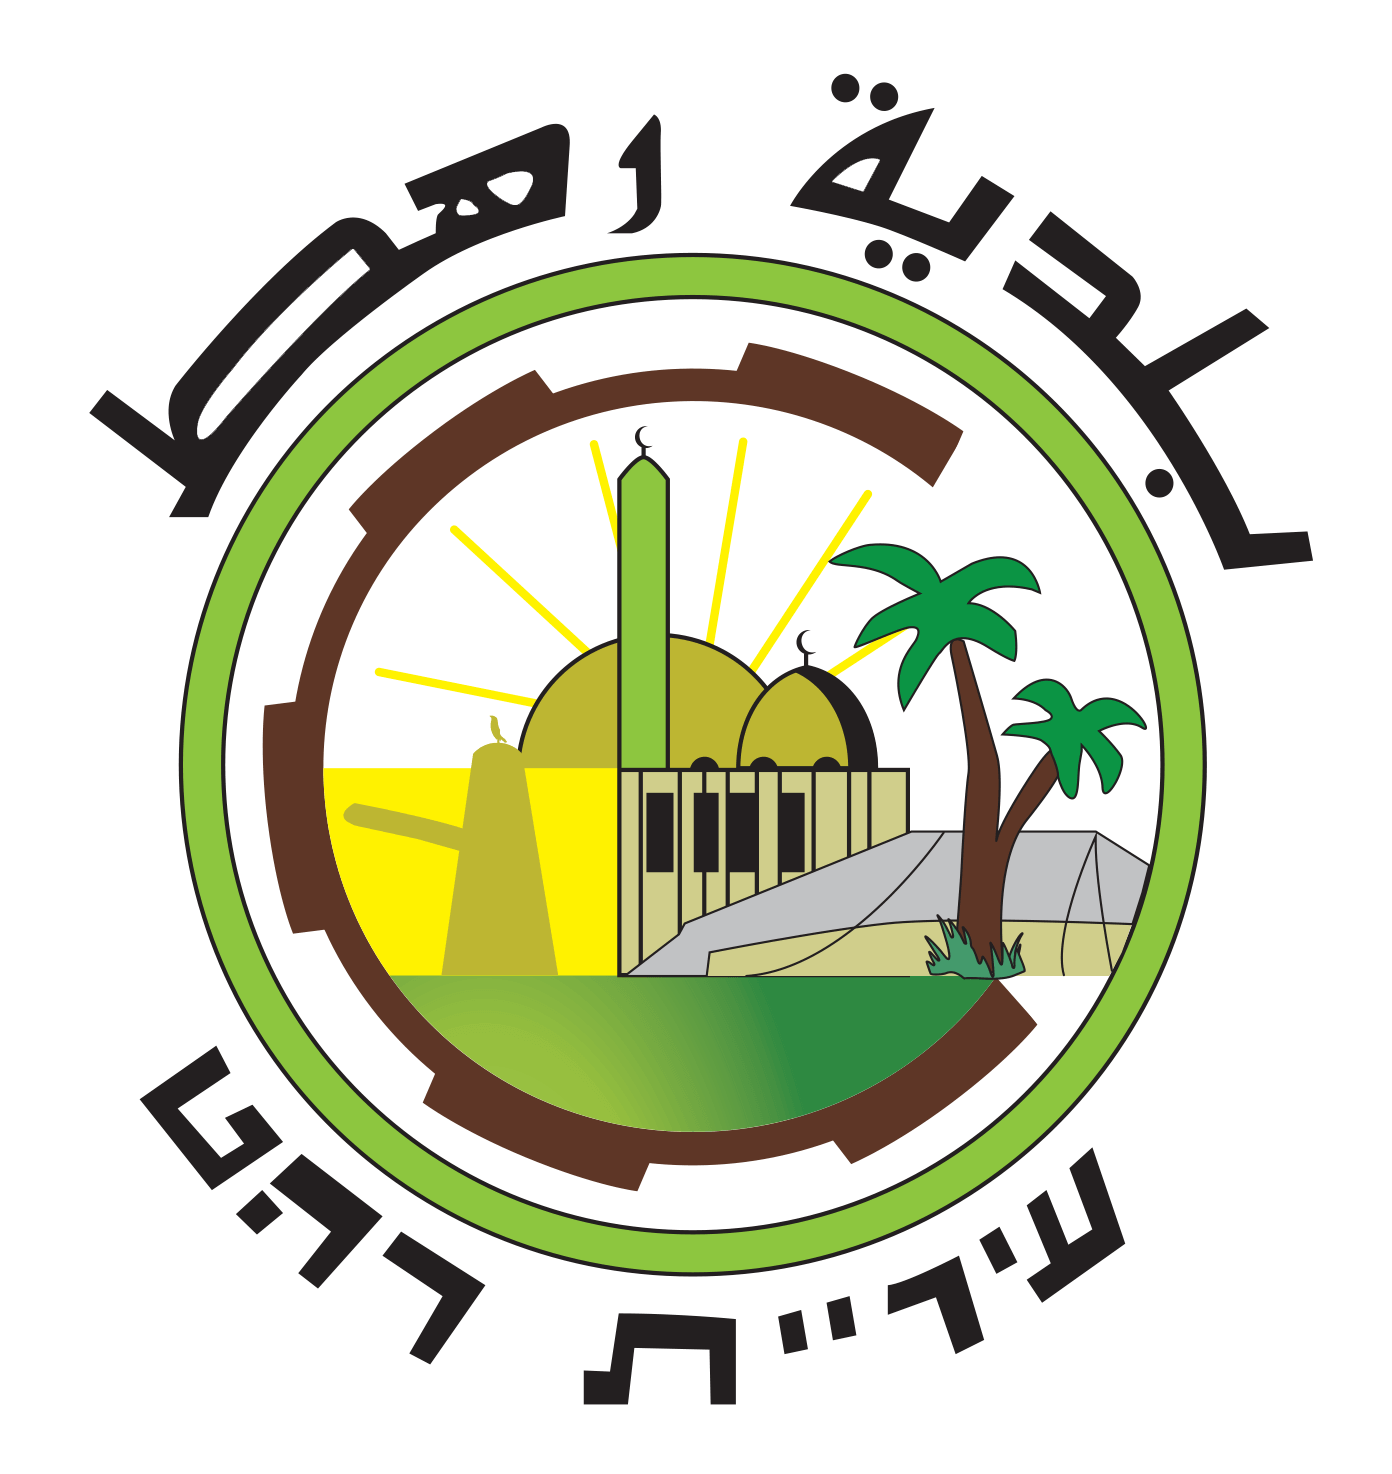 לוגו עיריית רהט איכות גבוהה (1)